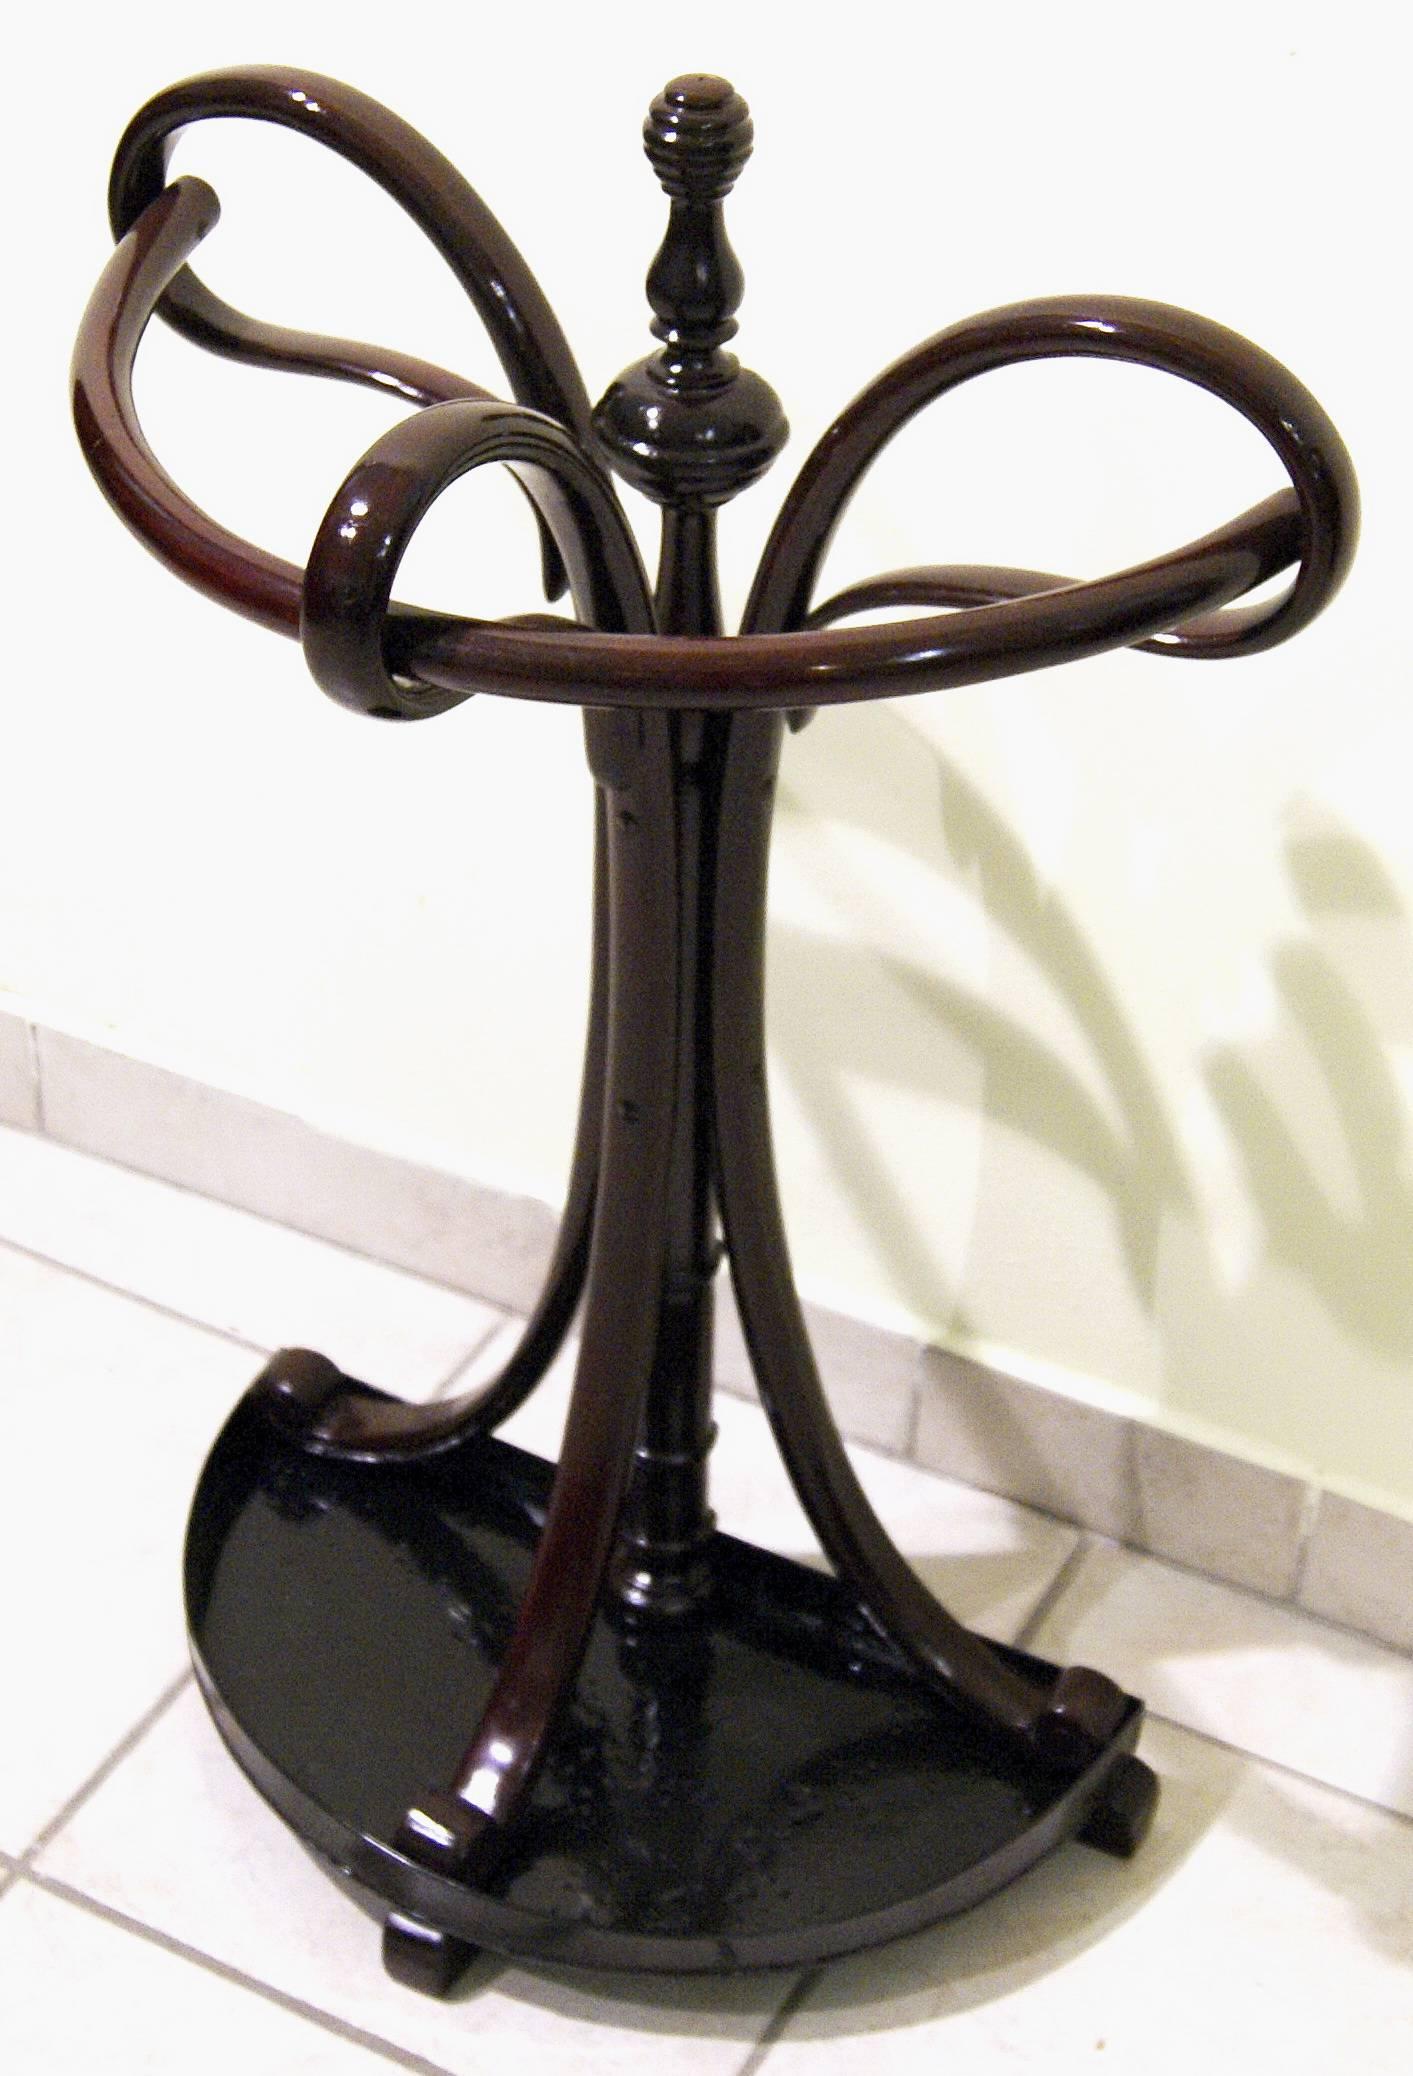 Art Nouveau Thonet Semi-Circular Support for Umbrellas Model 1, circa 1905-1910